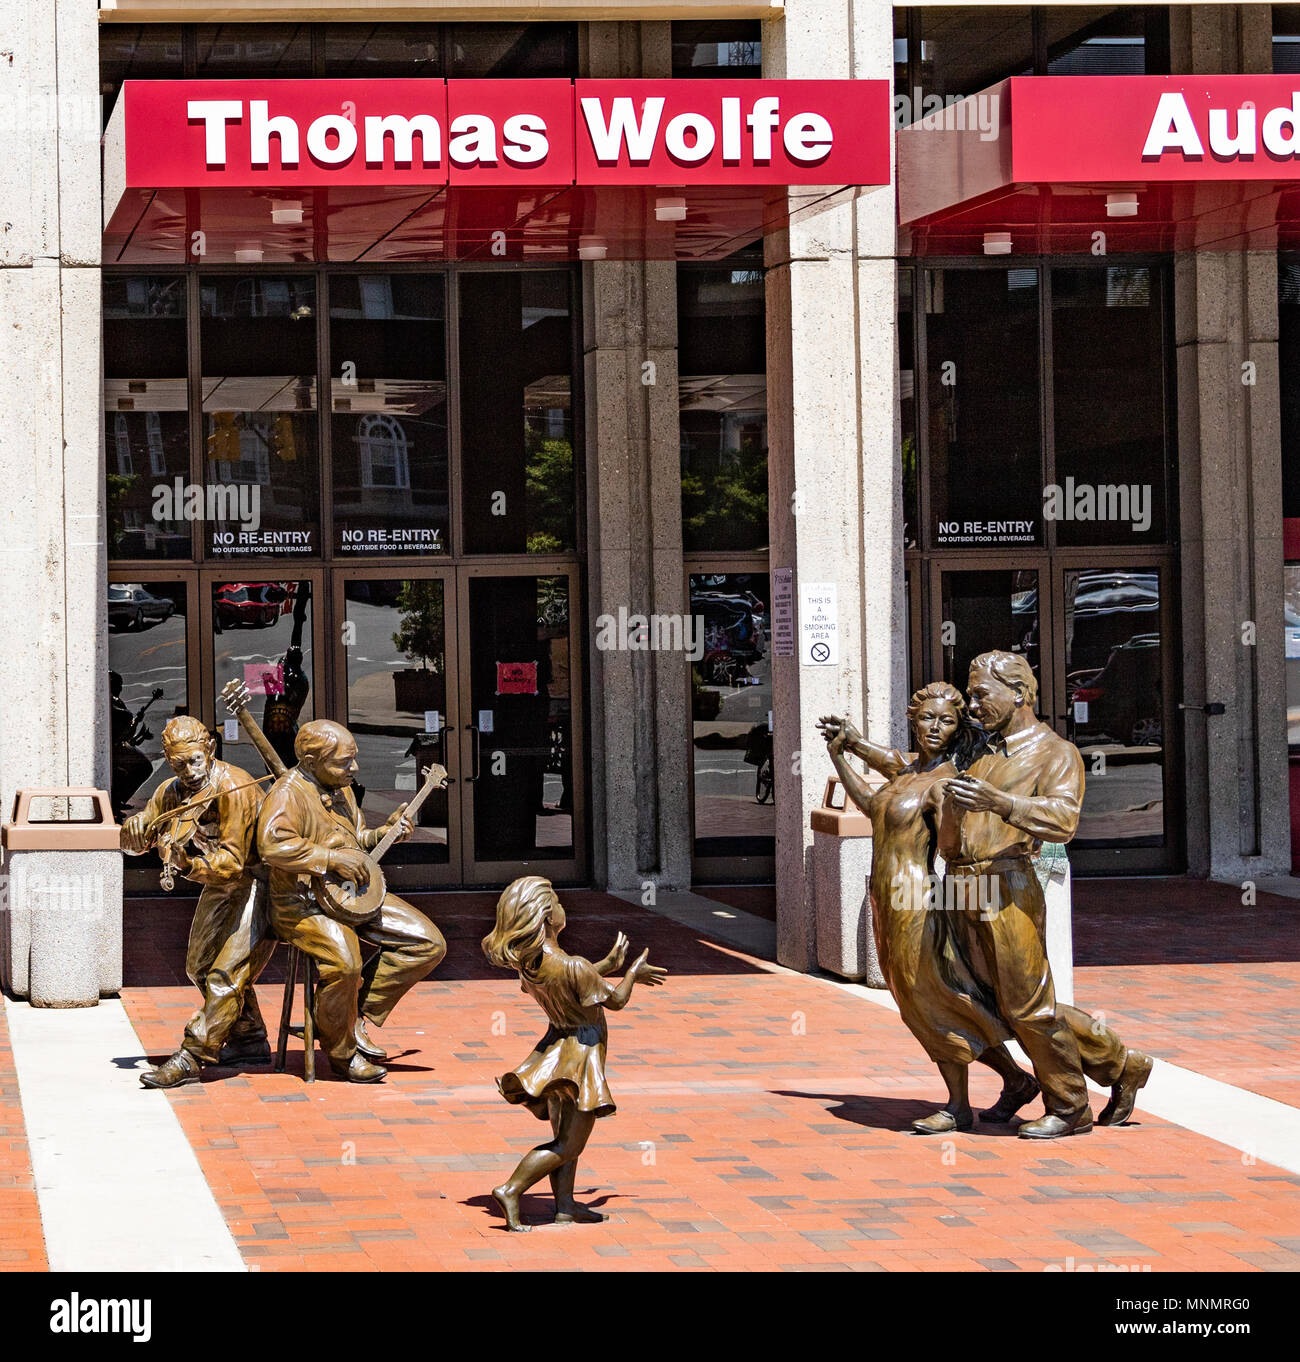 /ASHEVILLE, NC, USA-13 18 mai : Sculptures de fêtards à l'avant de l'Auditorium Thomas Wolfe à Asheville, NC, USA. Banque D'Images